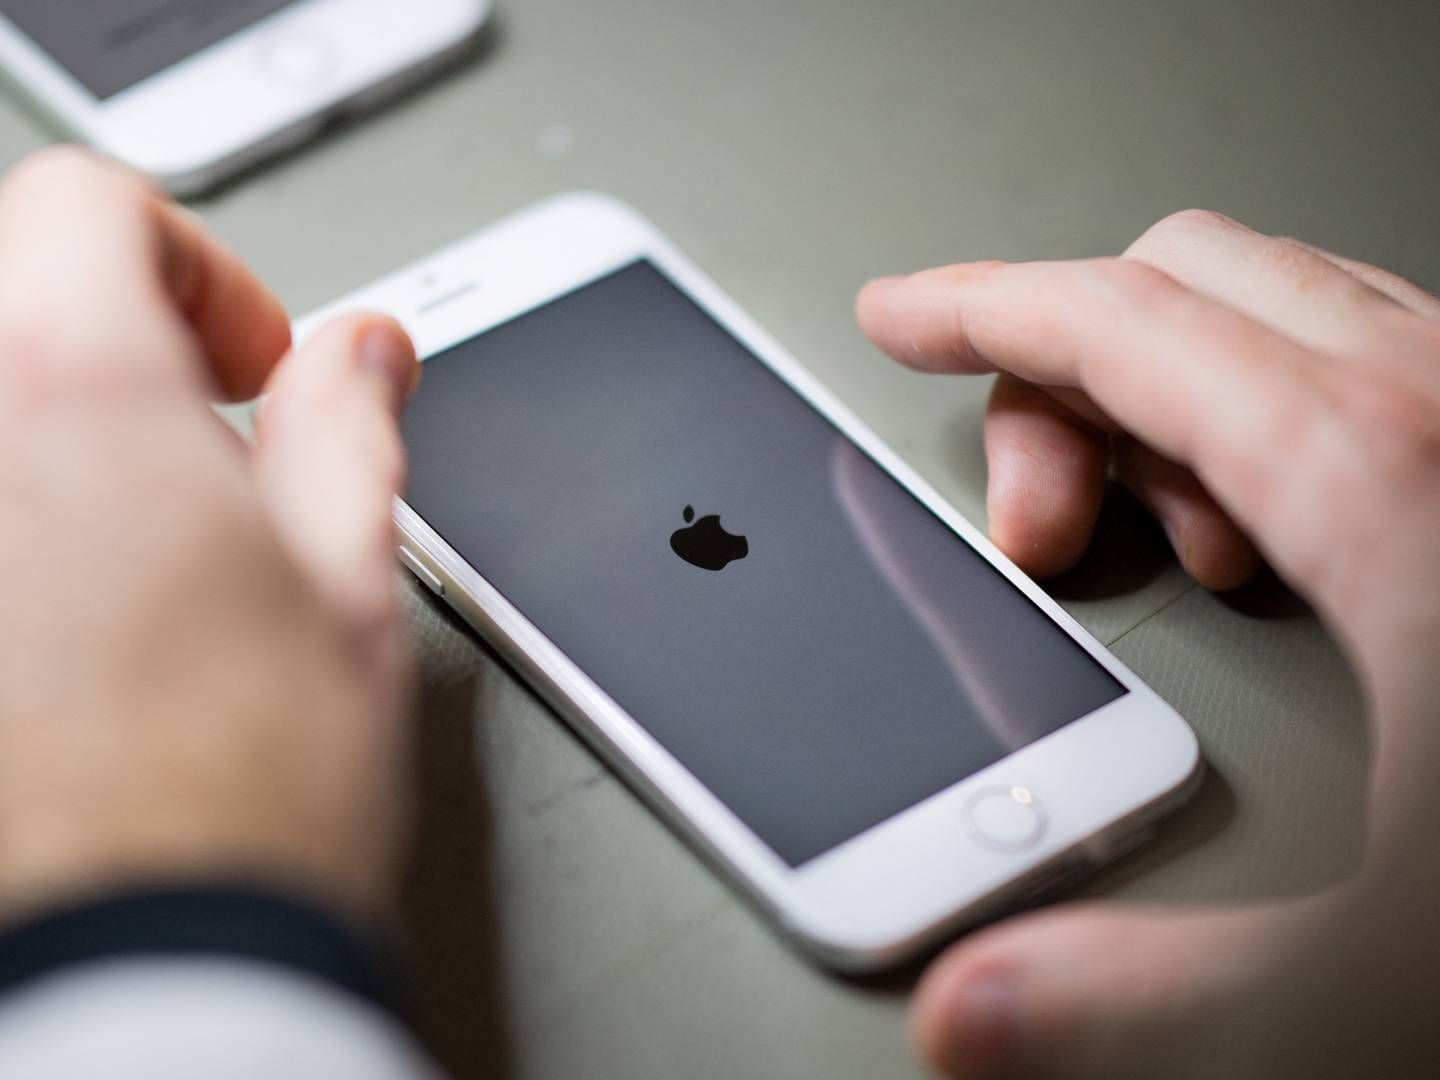 Kritik af Apples praksis med at scanne mobiltelefoner bunder i en misforståelse, mener softwarechef. | Foto: LOIC VENANCE/AFP / AFP